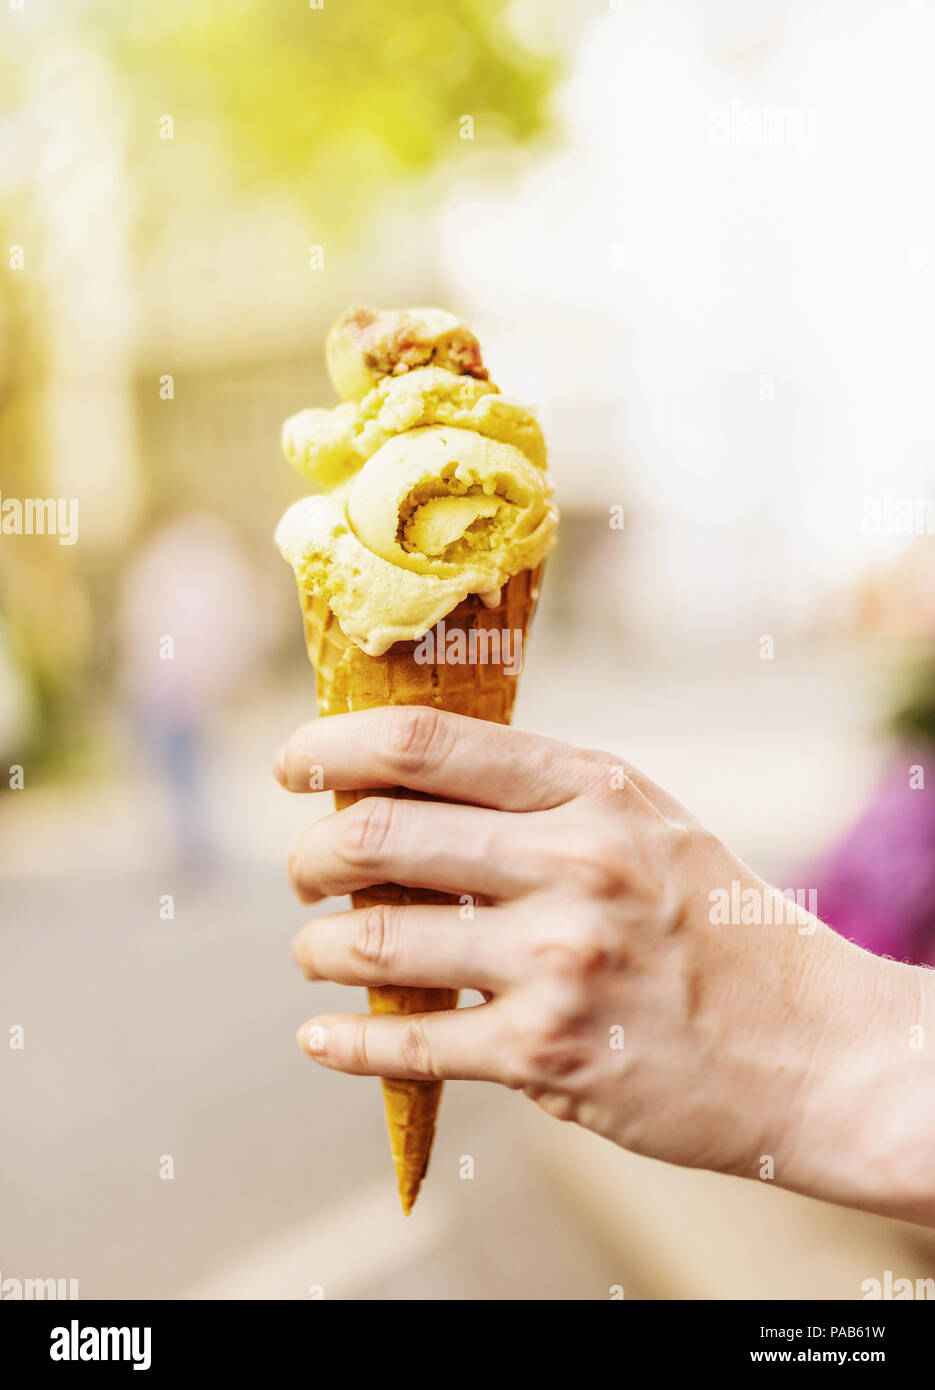 Femme hand holding ice cream cone contre l'arrière-plan flou Banque D'Images